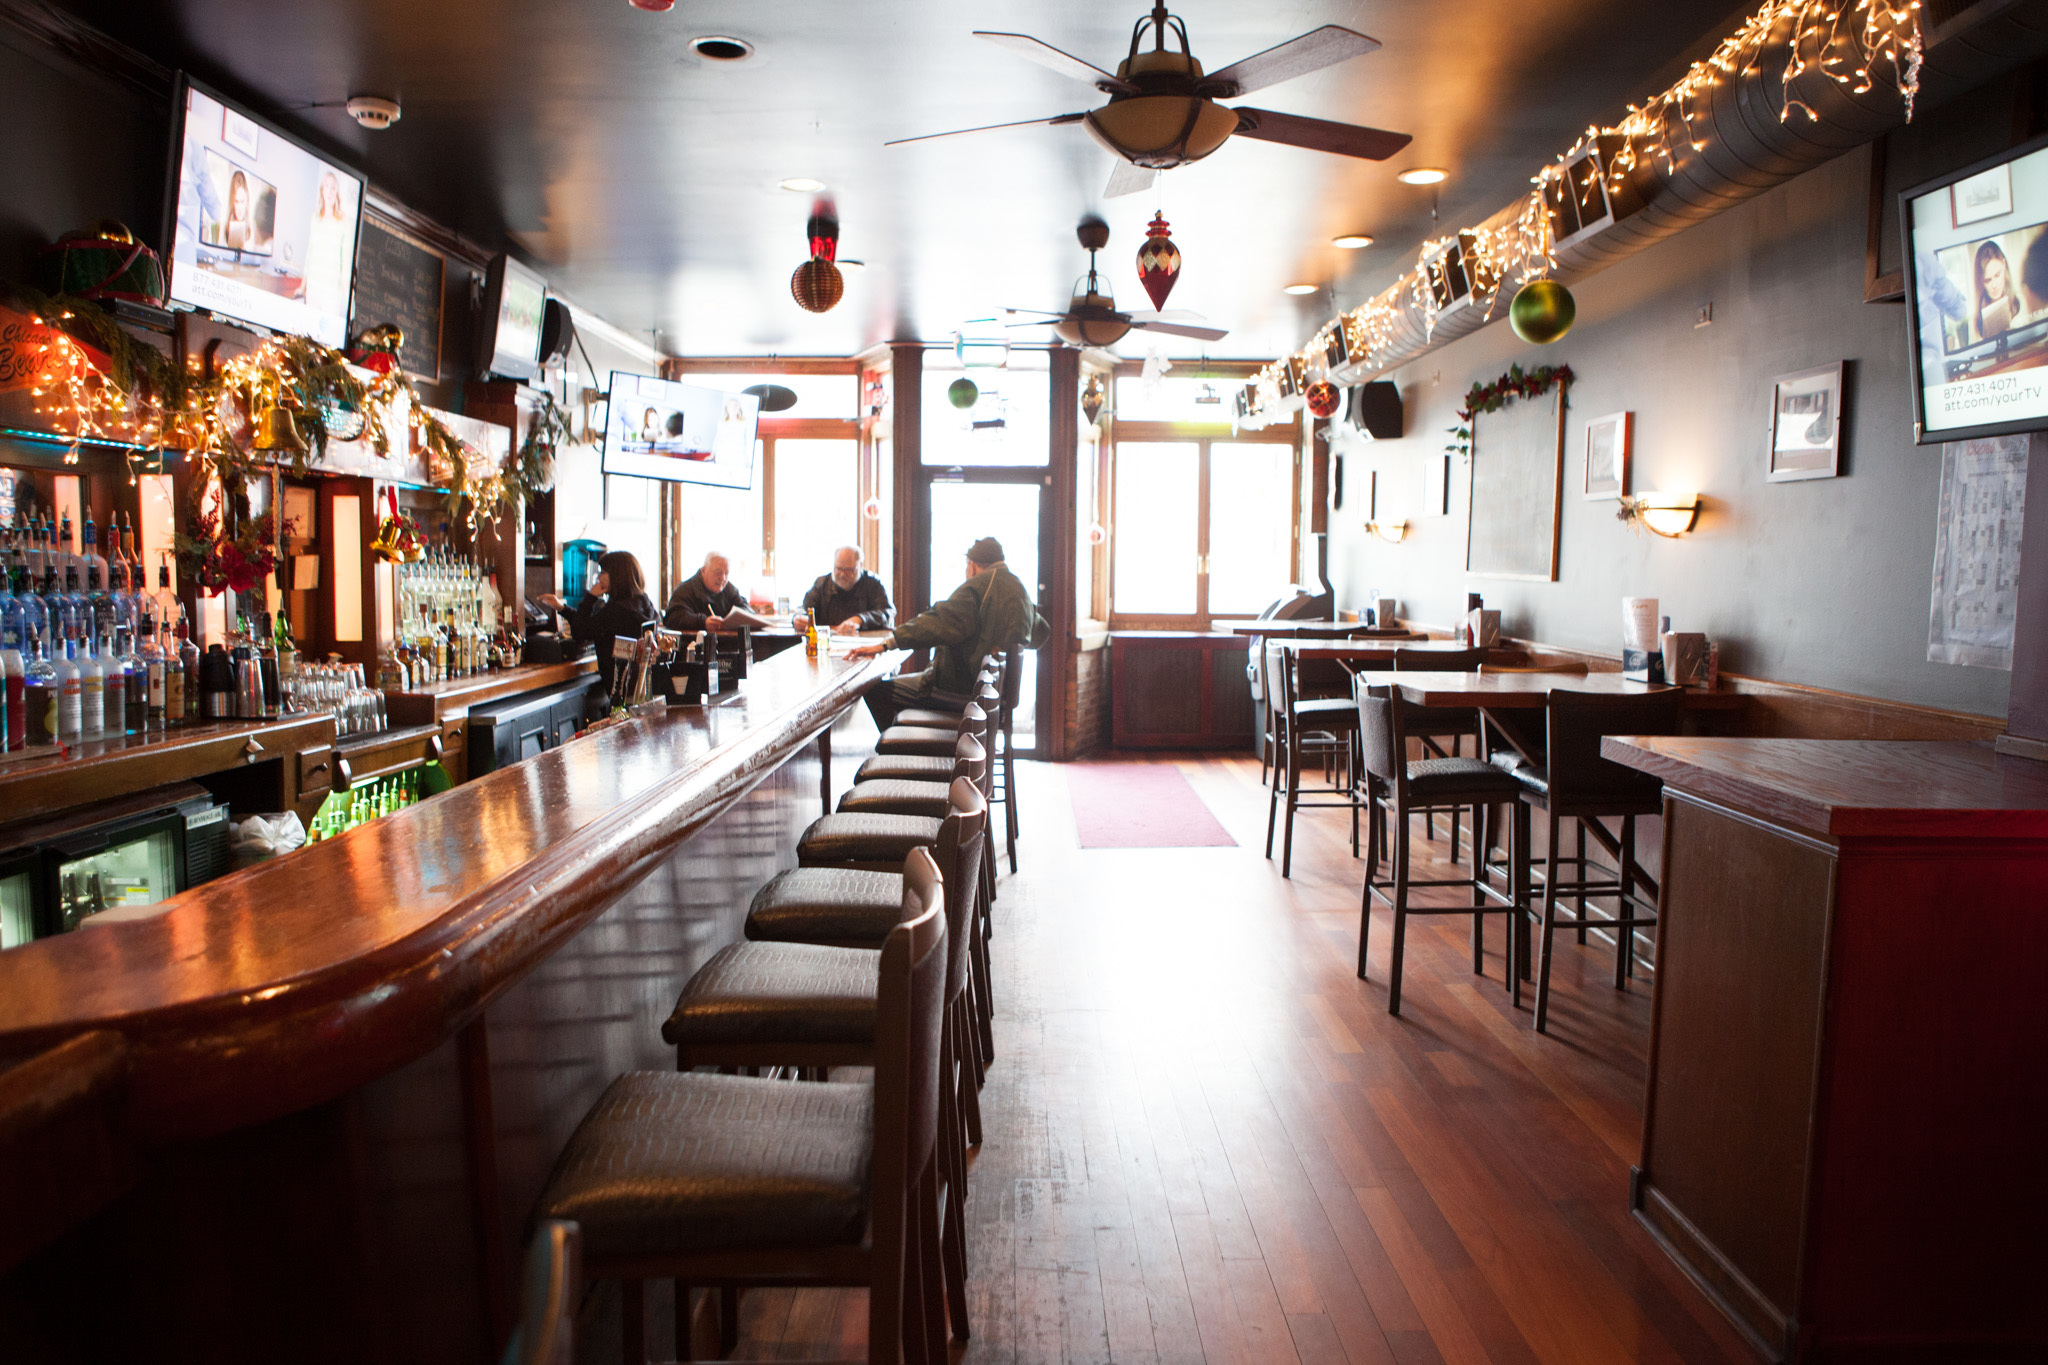 The best bars in Bridgeport Chicago